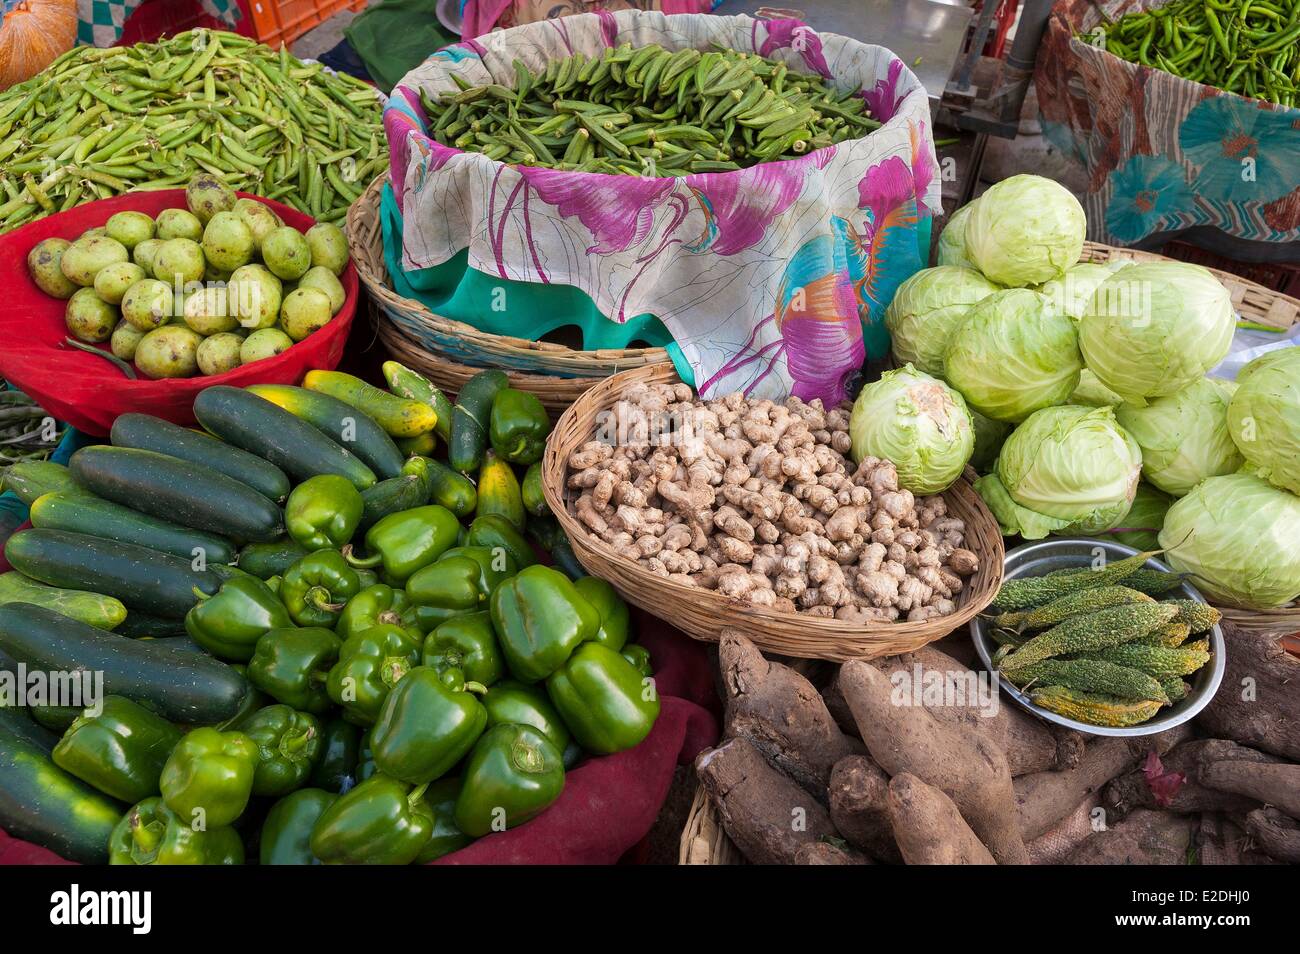 Inde Rajasthan Udaipur le marché des fruits et légumes Banque D'Images